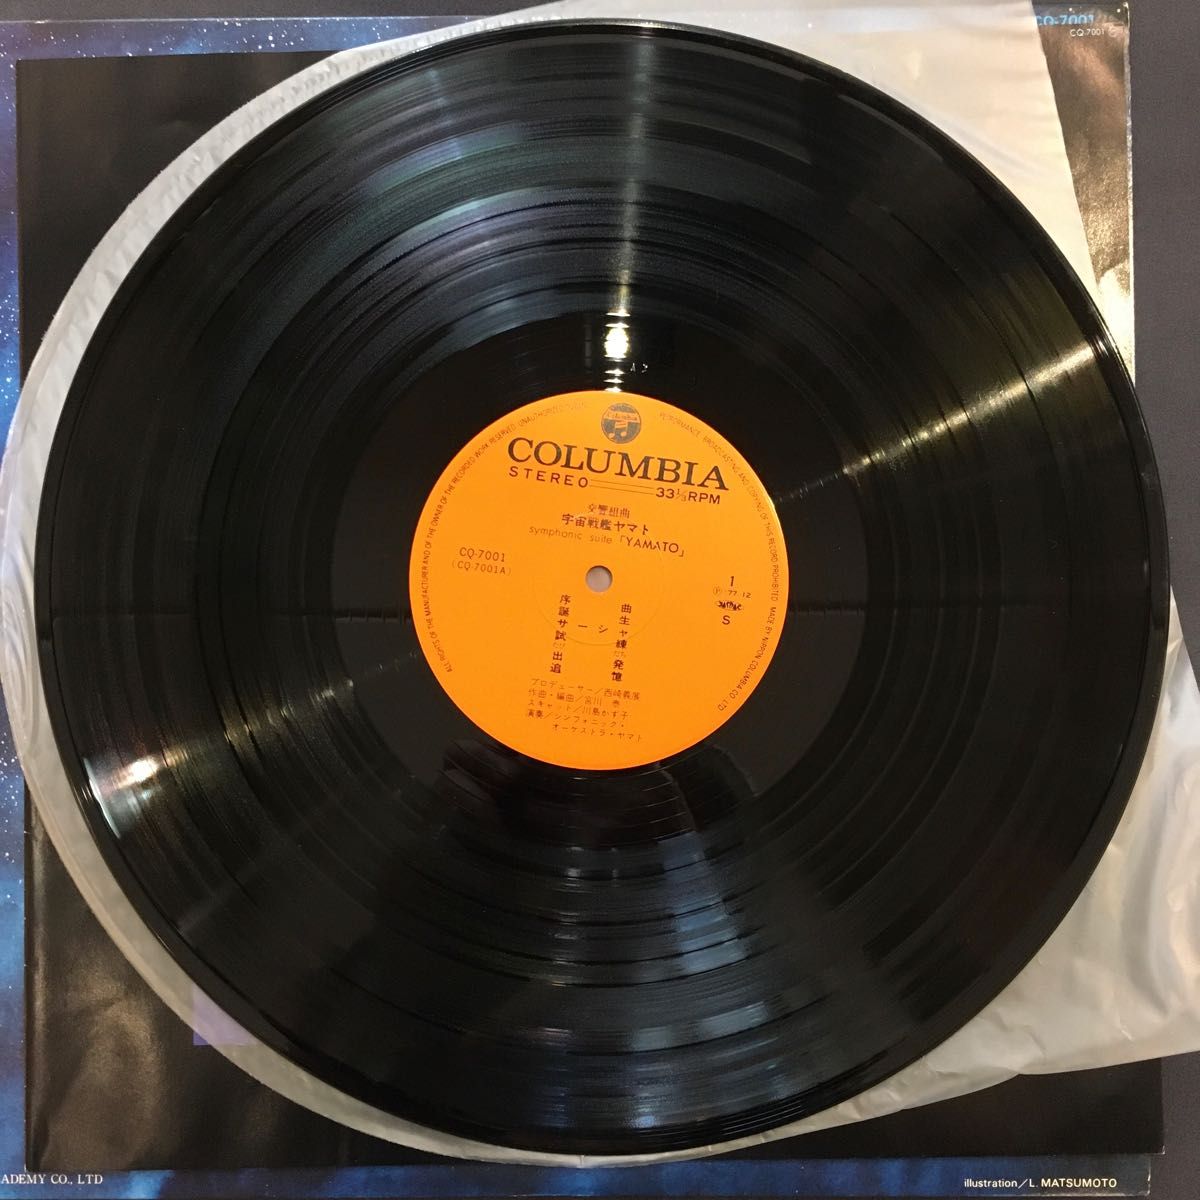 交響組曲 宇宙戦艦ヤマト アナログ盤 LPレコード